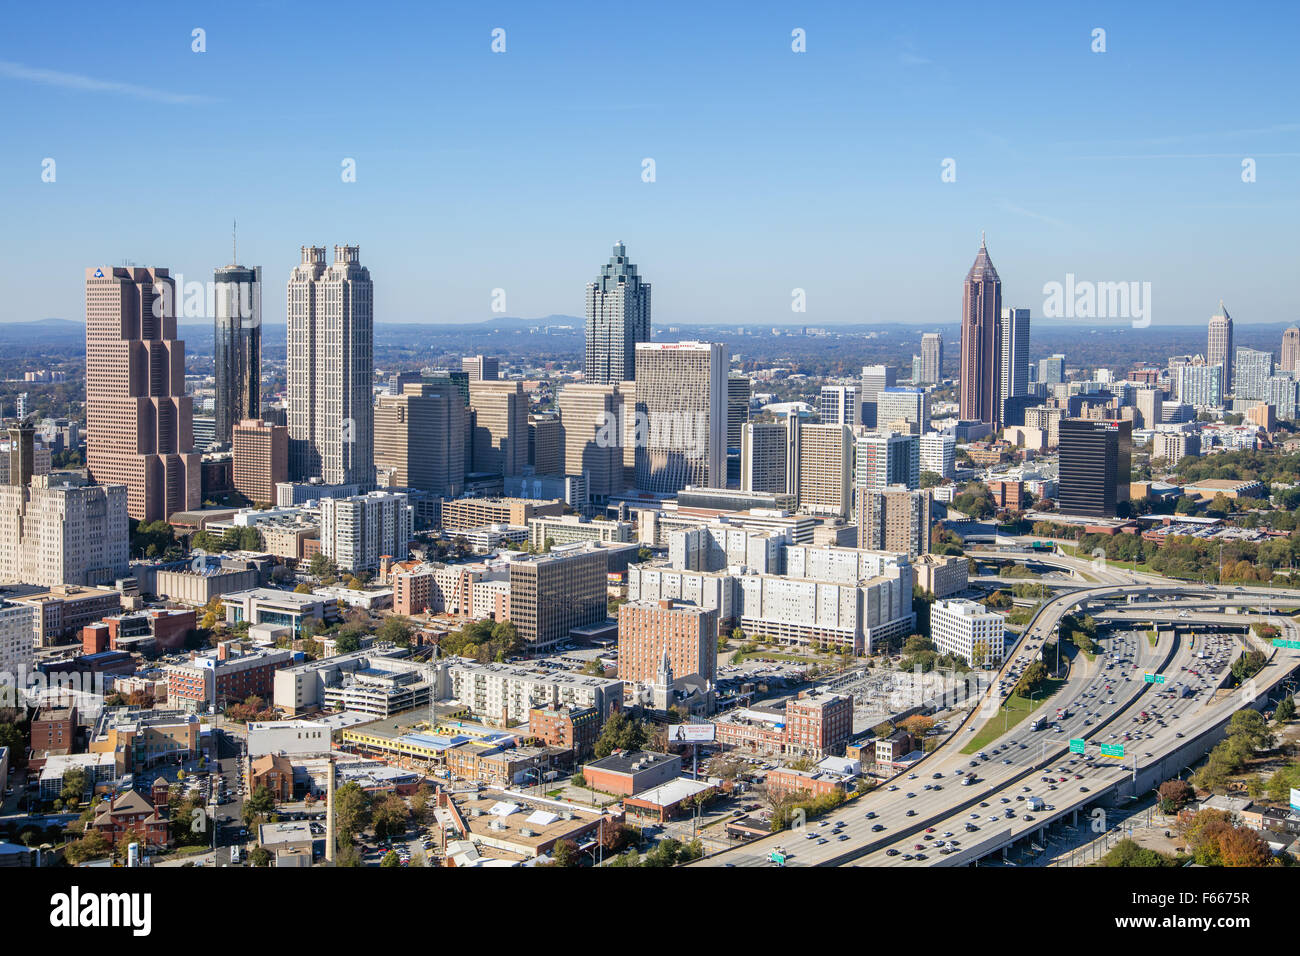 Fotografía aérea de Atlanta, Georgia, EE.UU. tomada el 11/10/2015 Foto de stock